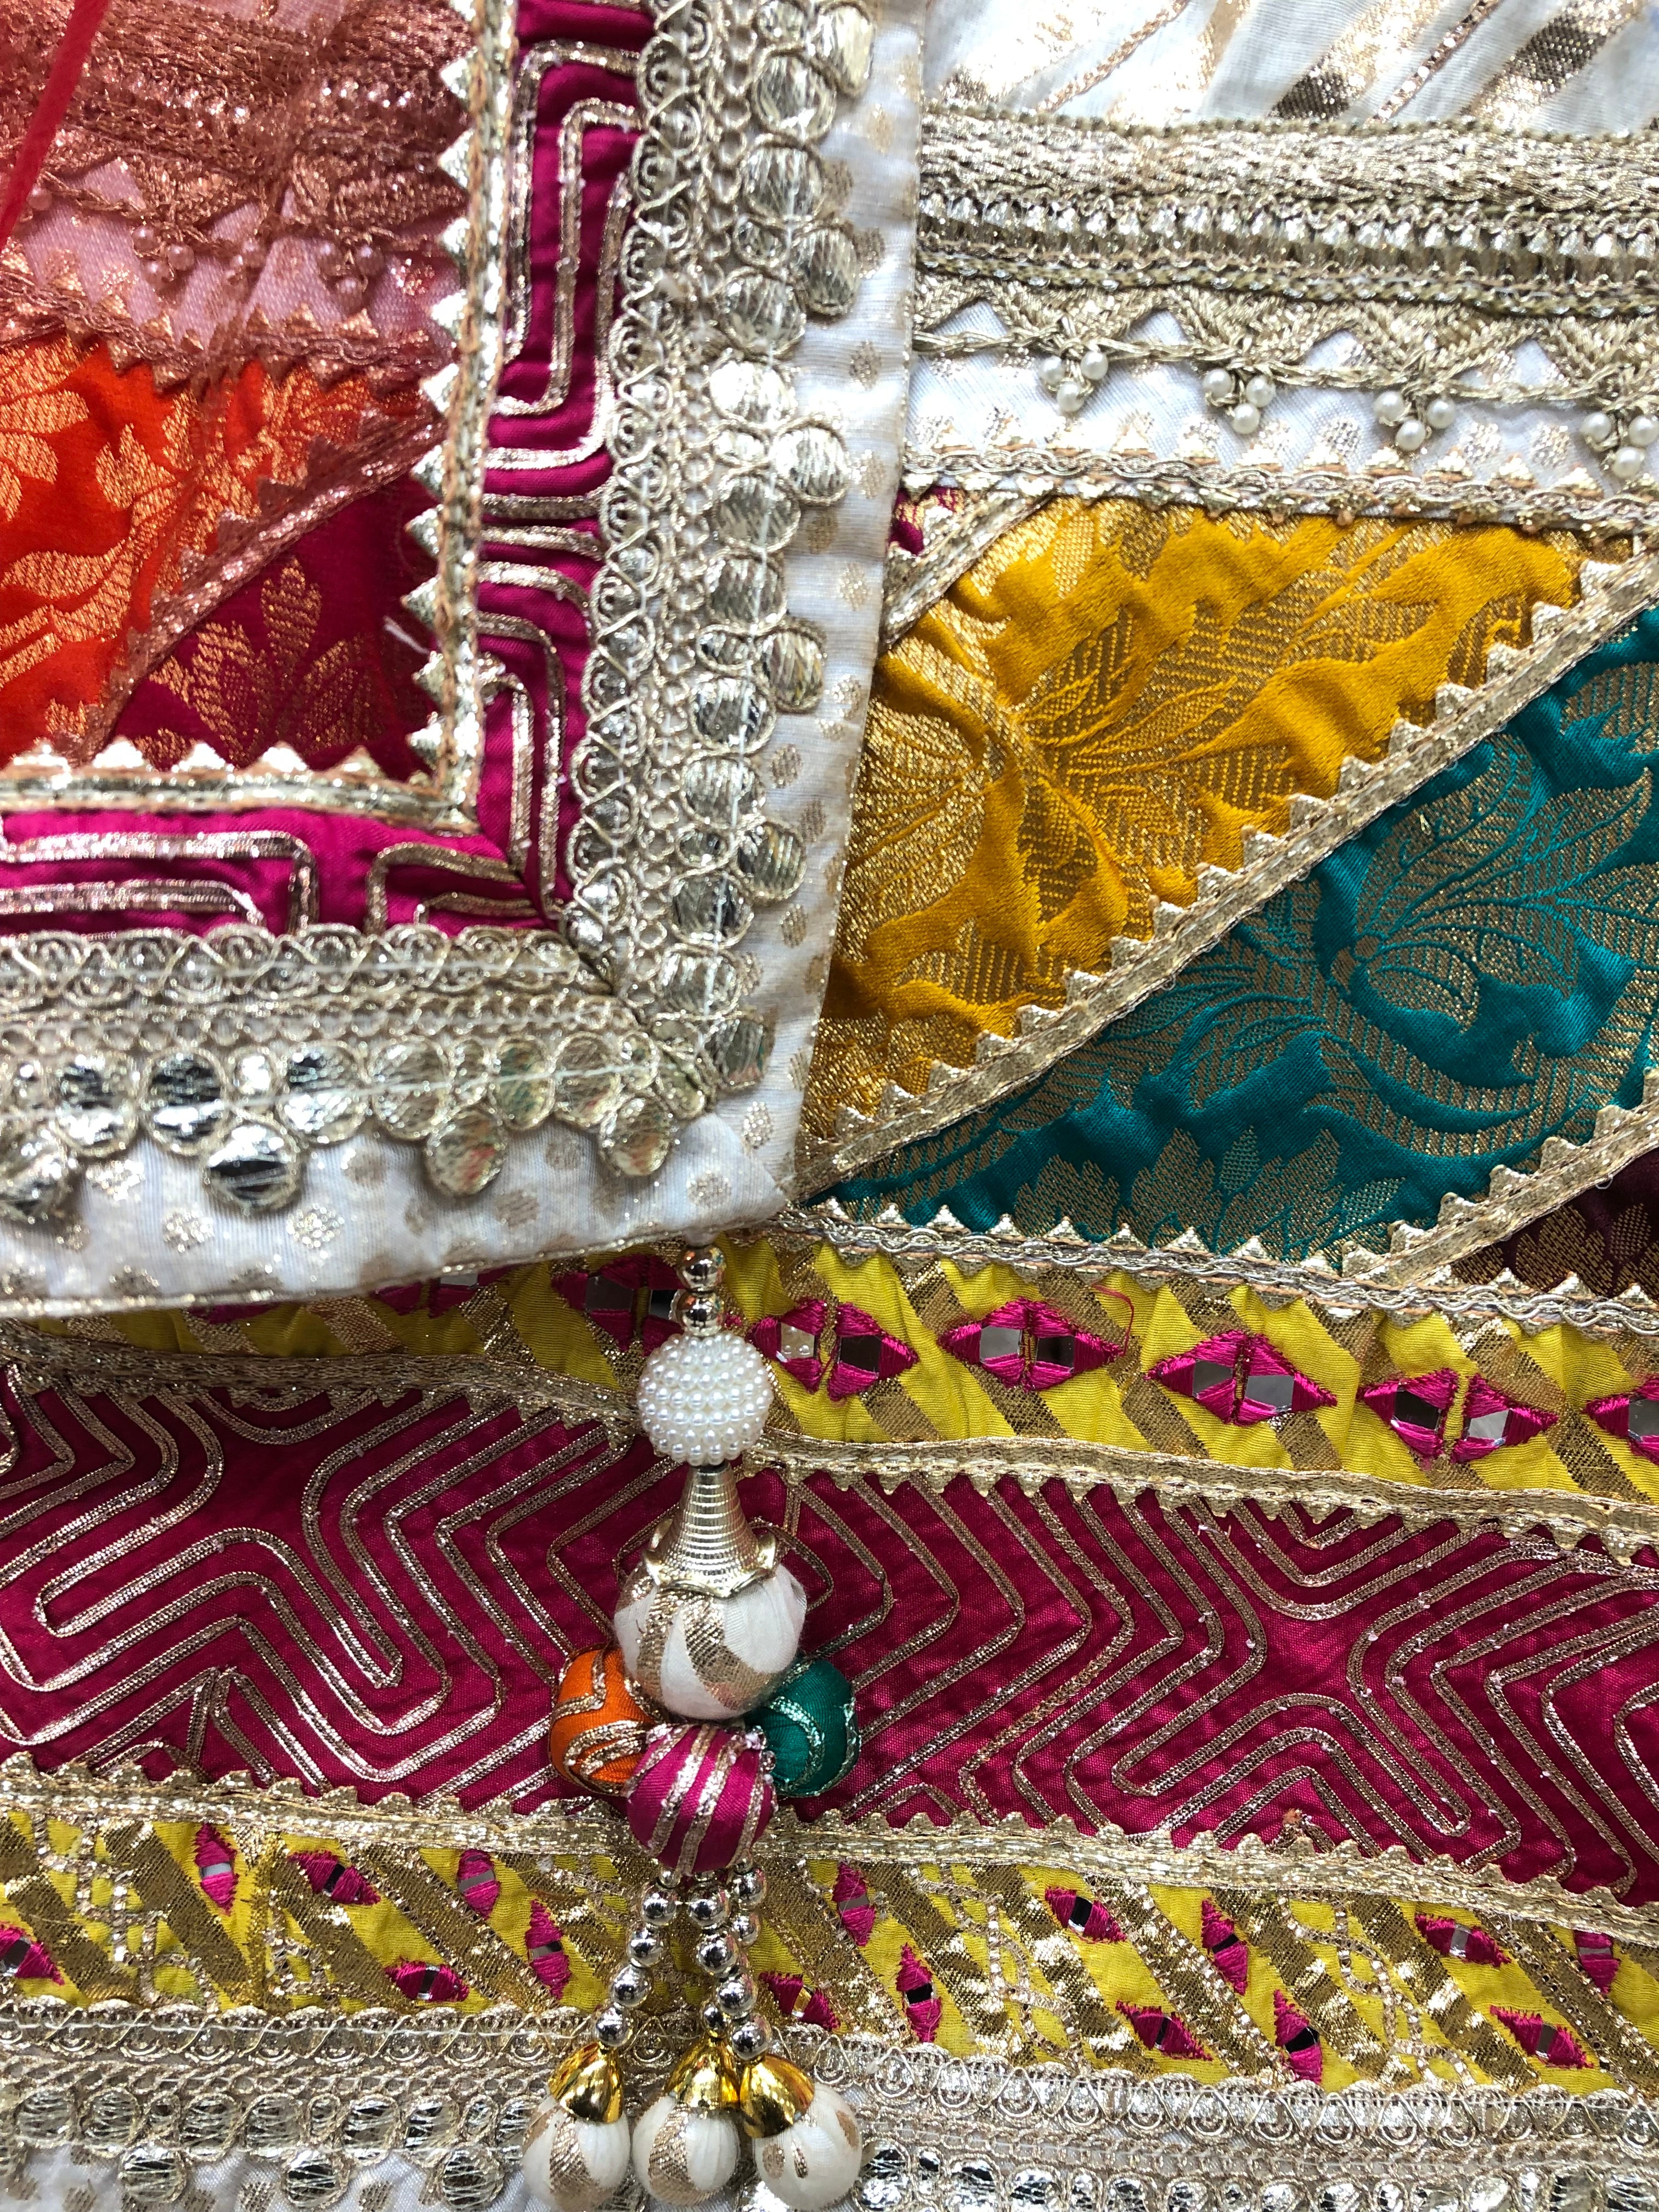 Cream Banarsi Silk Lehenga With Zari, Mirror And Multi Colour Border